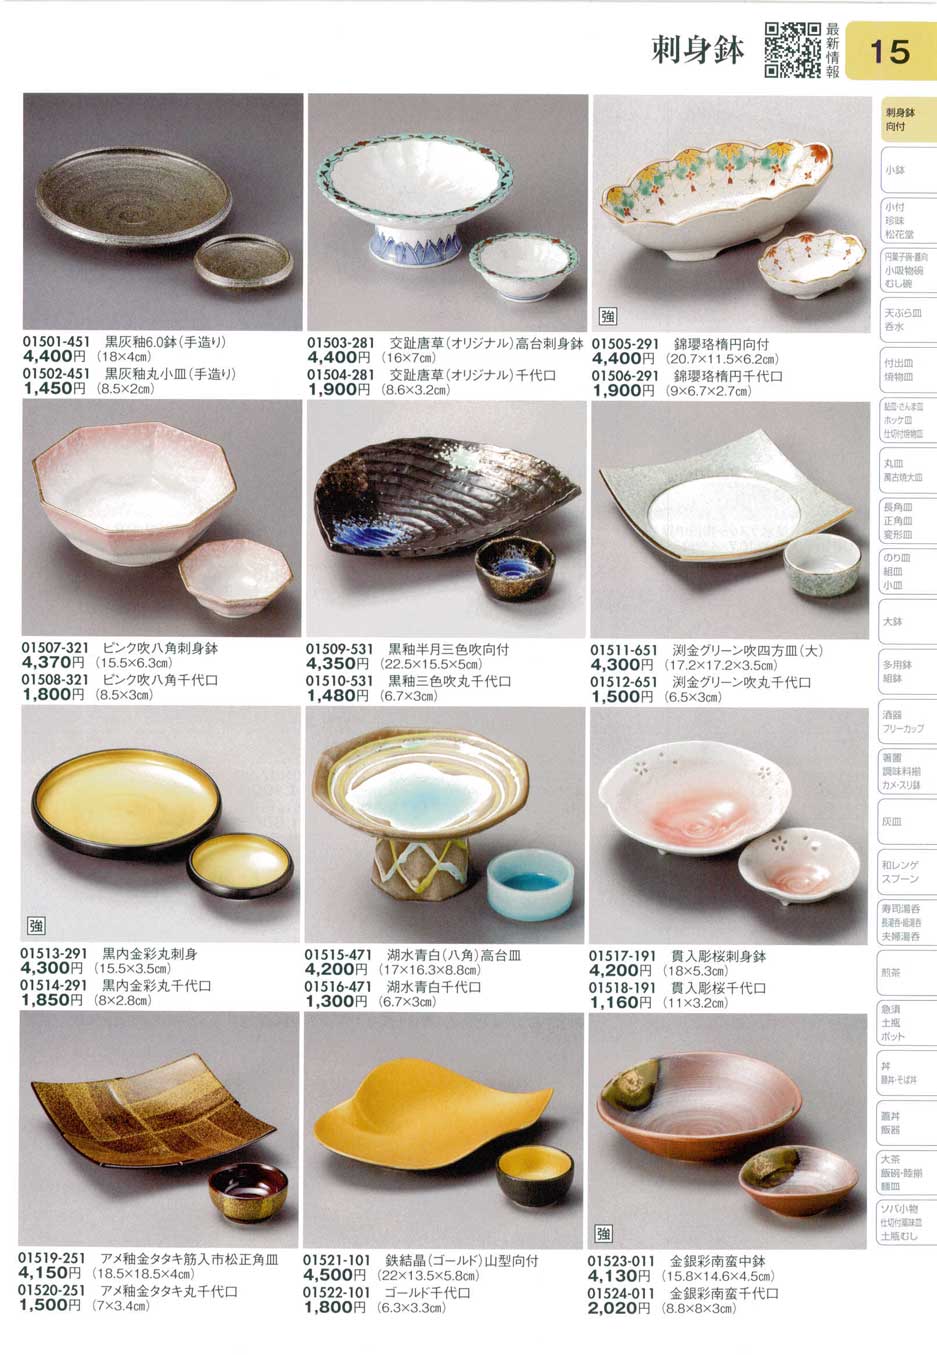 貫入彫桜刺身鉢（商品番号01517-191）